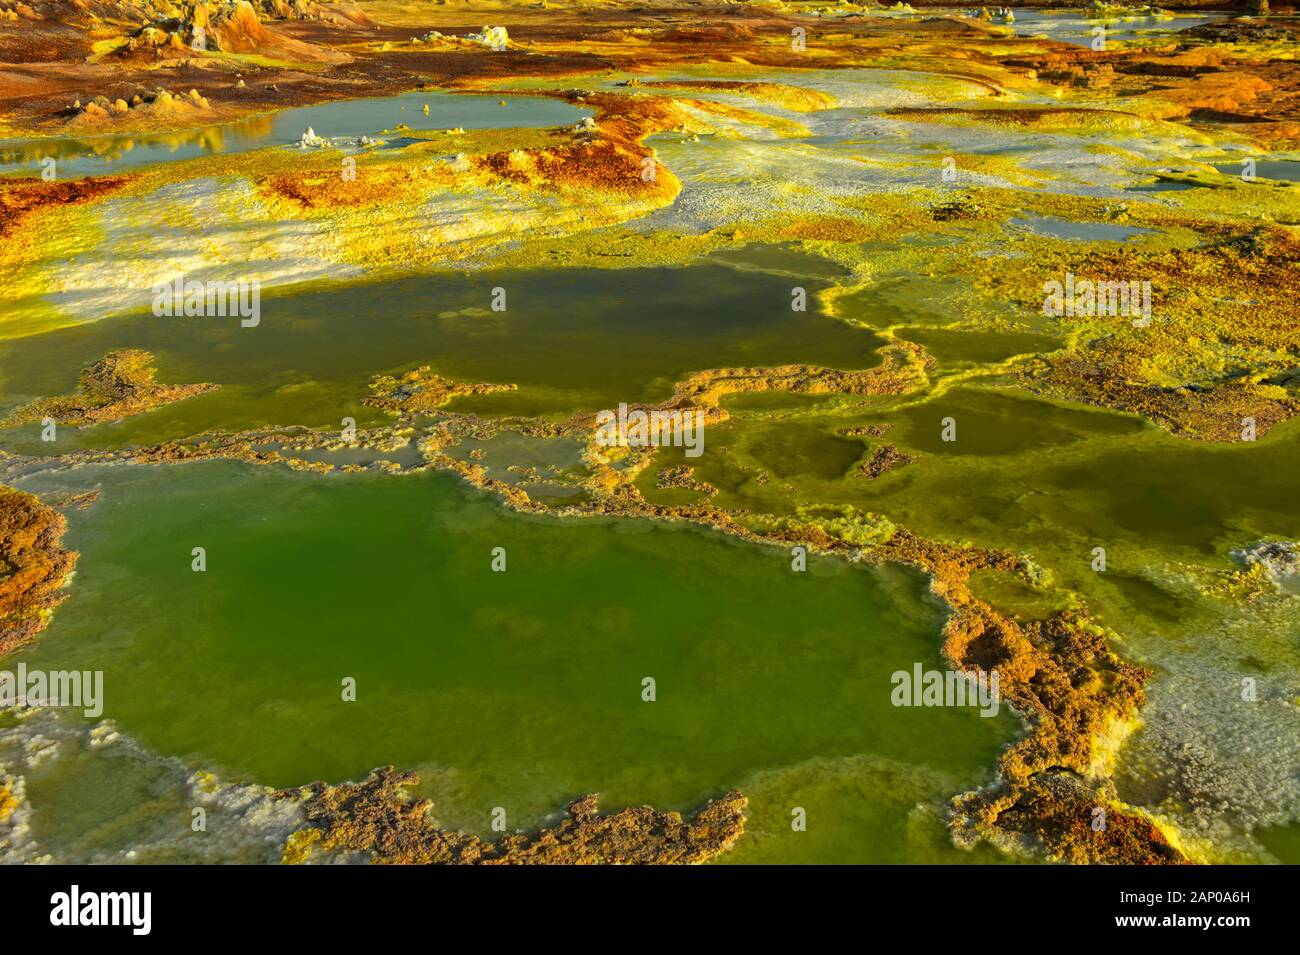 Saumure acide sulfurique, piscine avec les sédiments le champ géothermique de la dépression Danakil, Dallol, Triangle Afar, Ethiopie Banque D'Images